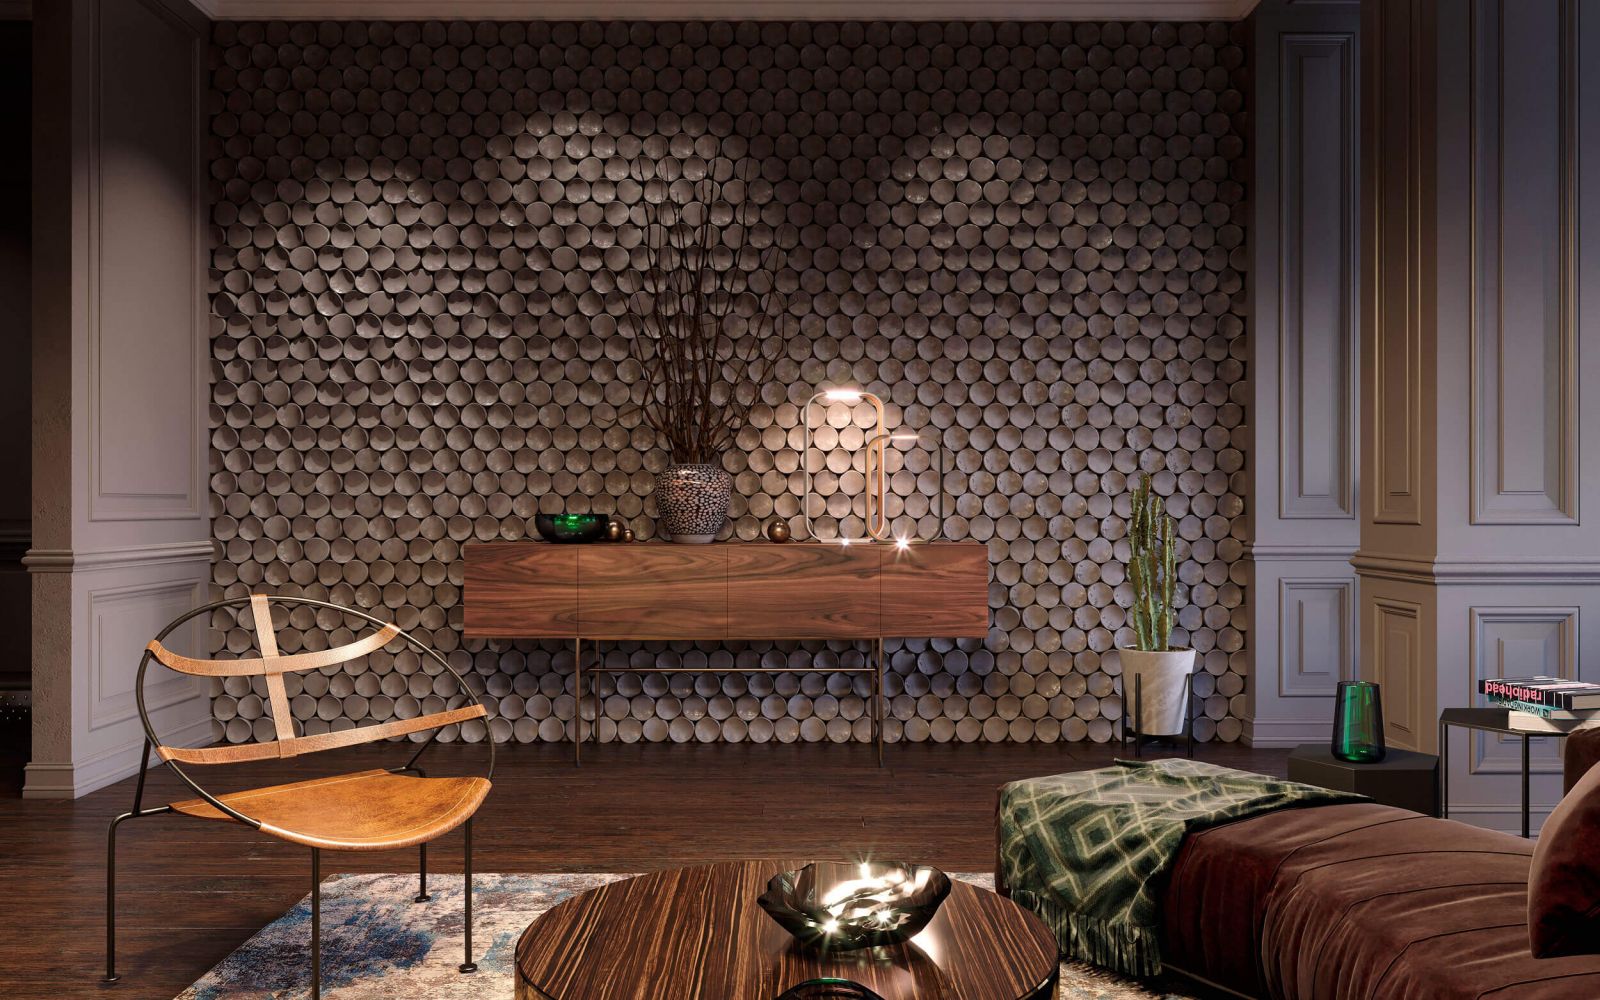  Акцент в интерьере гостиной сделан на оригинальную стену украшенную декоративным панно из 3D-панелей